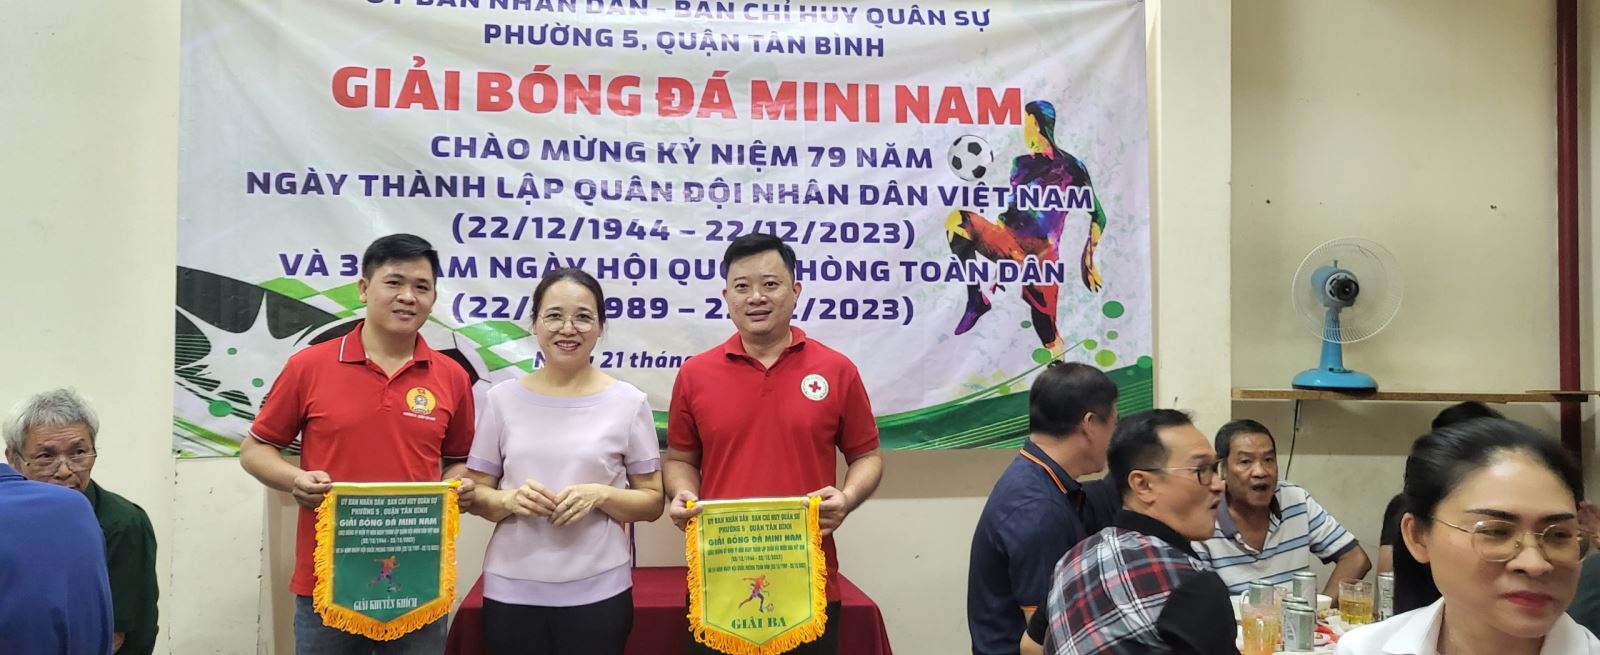 Phường 5: Tổ chức Giải bóng đá kỷ niệm 79 năm Ngày thành lập Quân đội nhân dân Việt Nam (22/12/1944 - 22/12/2023)